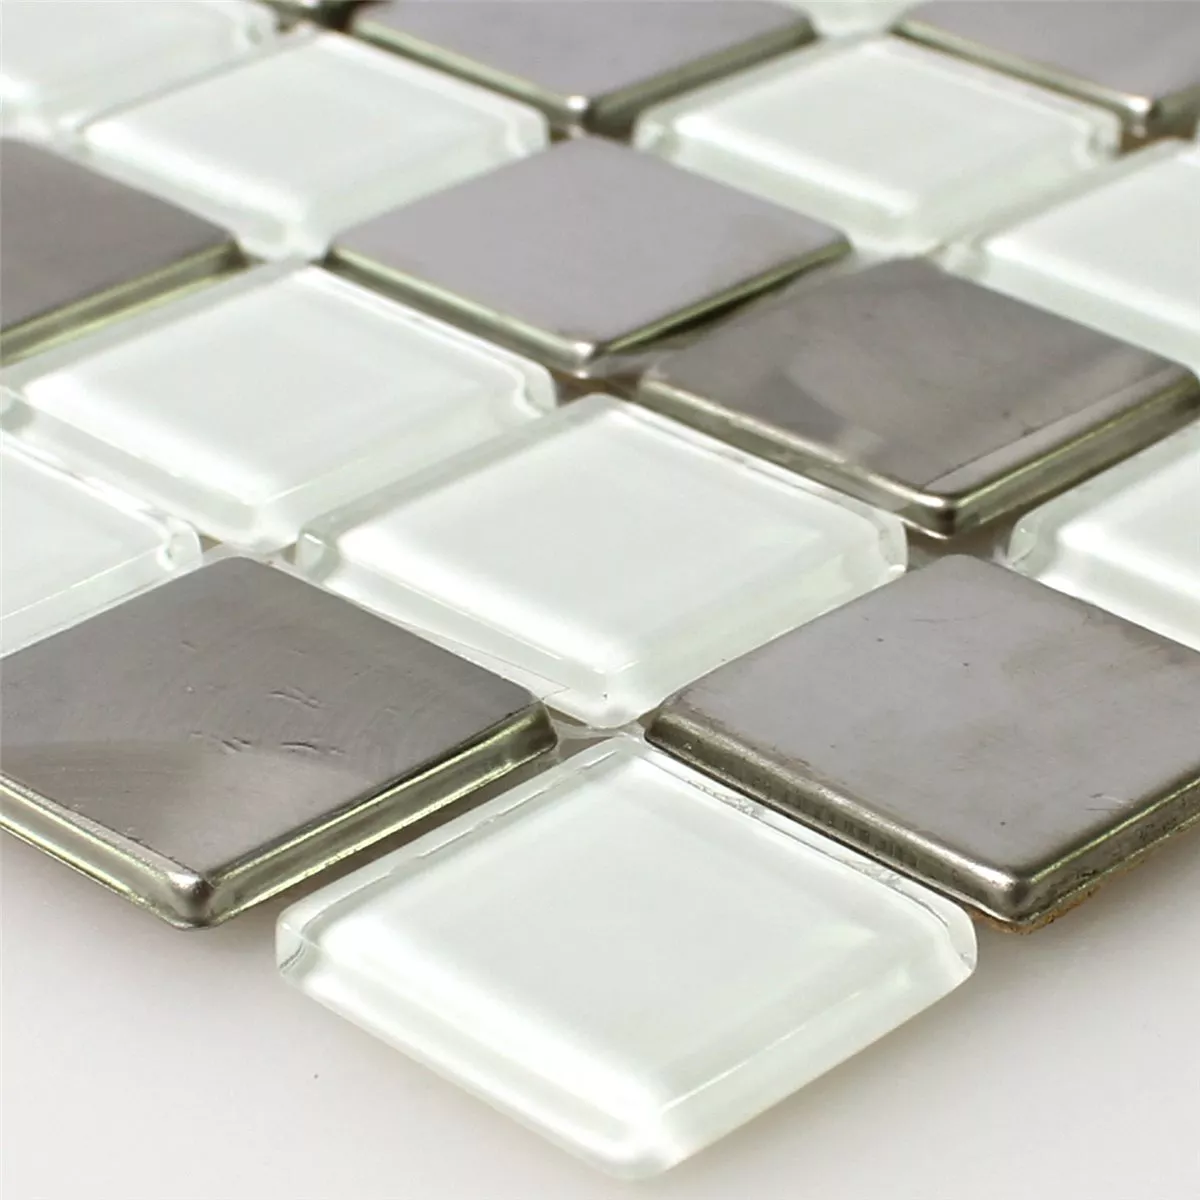 Muster von Mosaikfliesen Edelstahl Glas Weiss Silber Mix